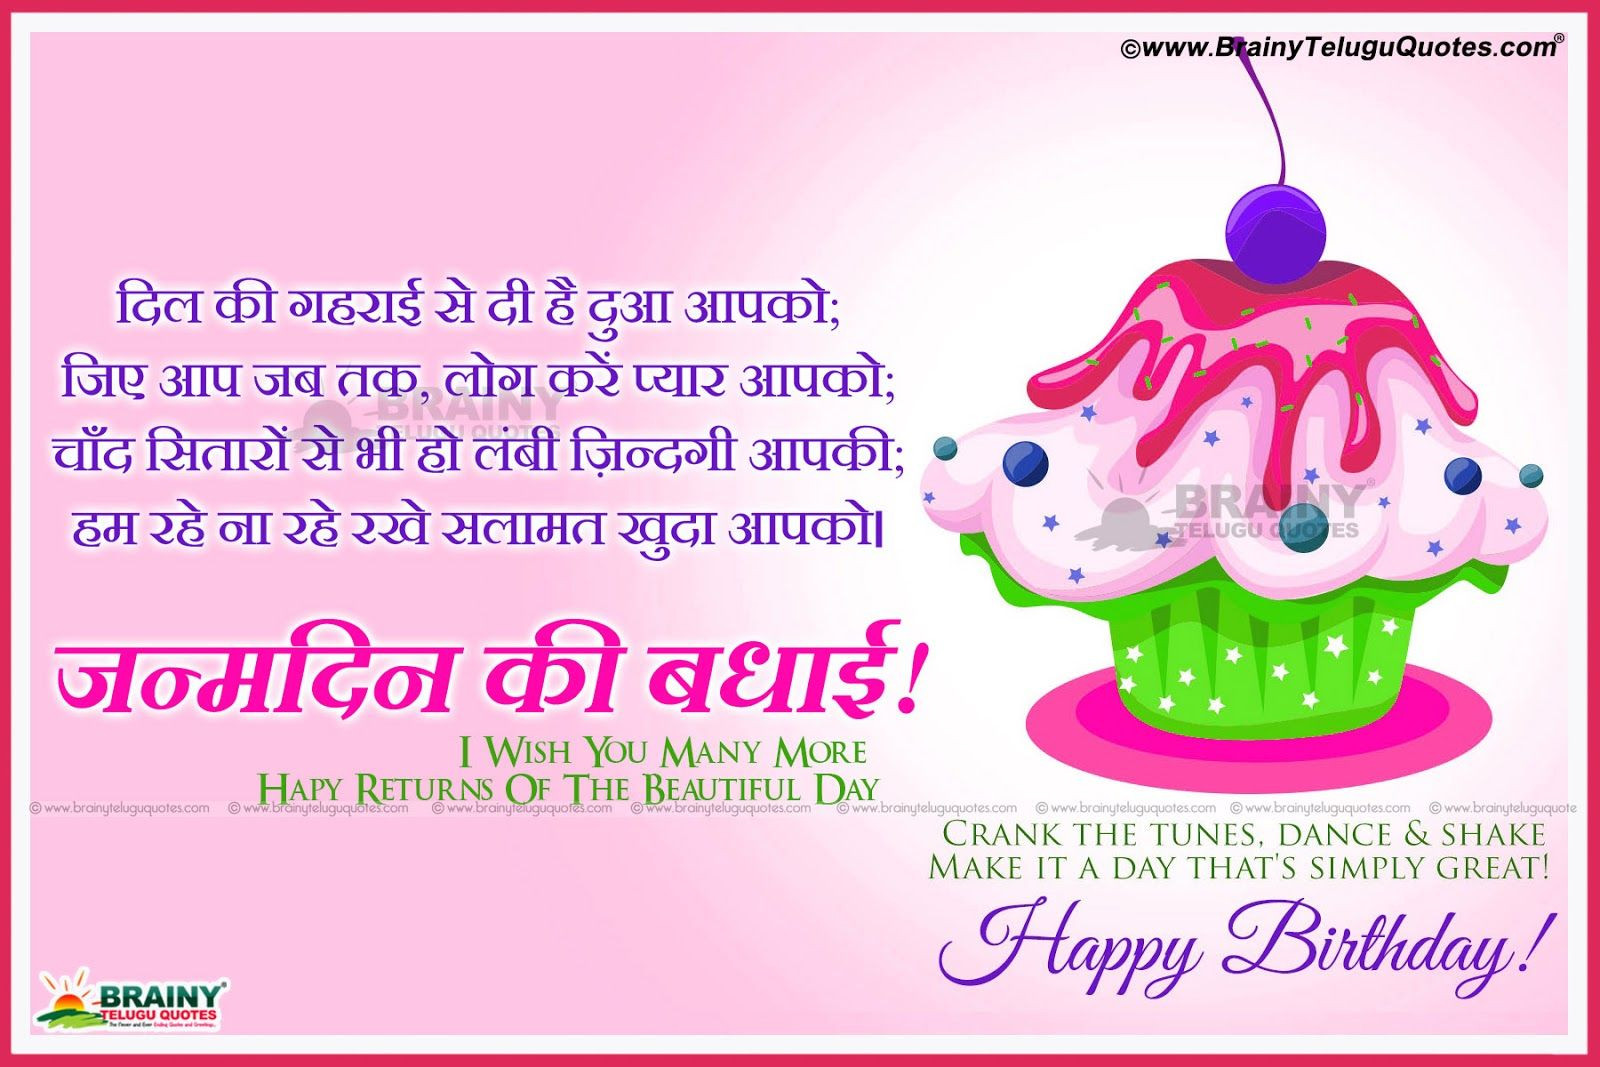 Hindi Birthday Wishes
 janmadin shayri hindi birthday wishes cards greetings